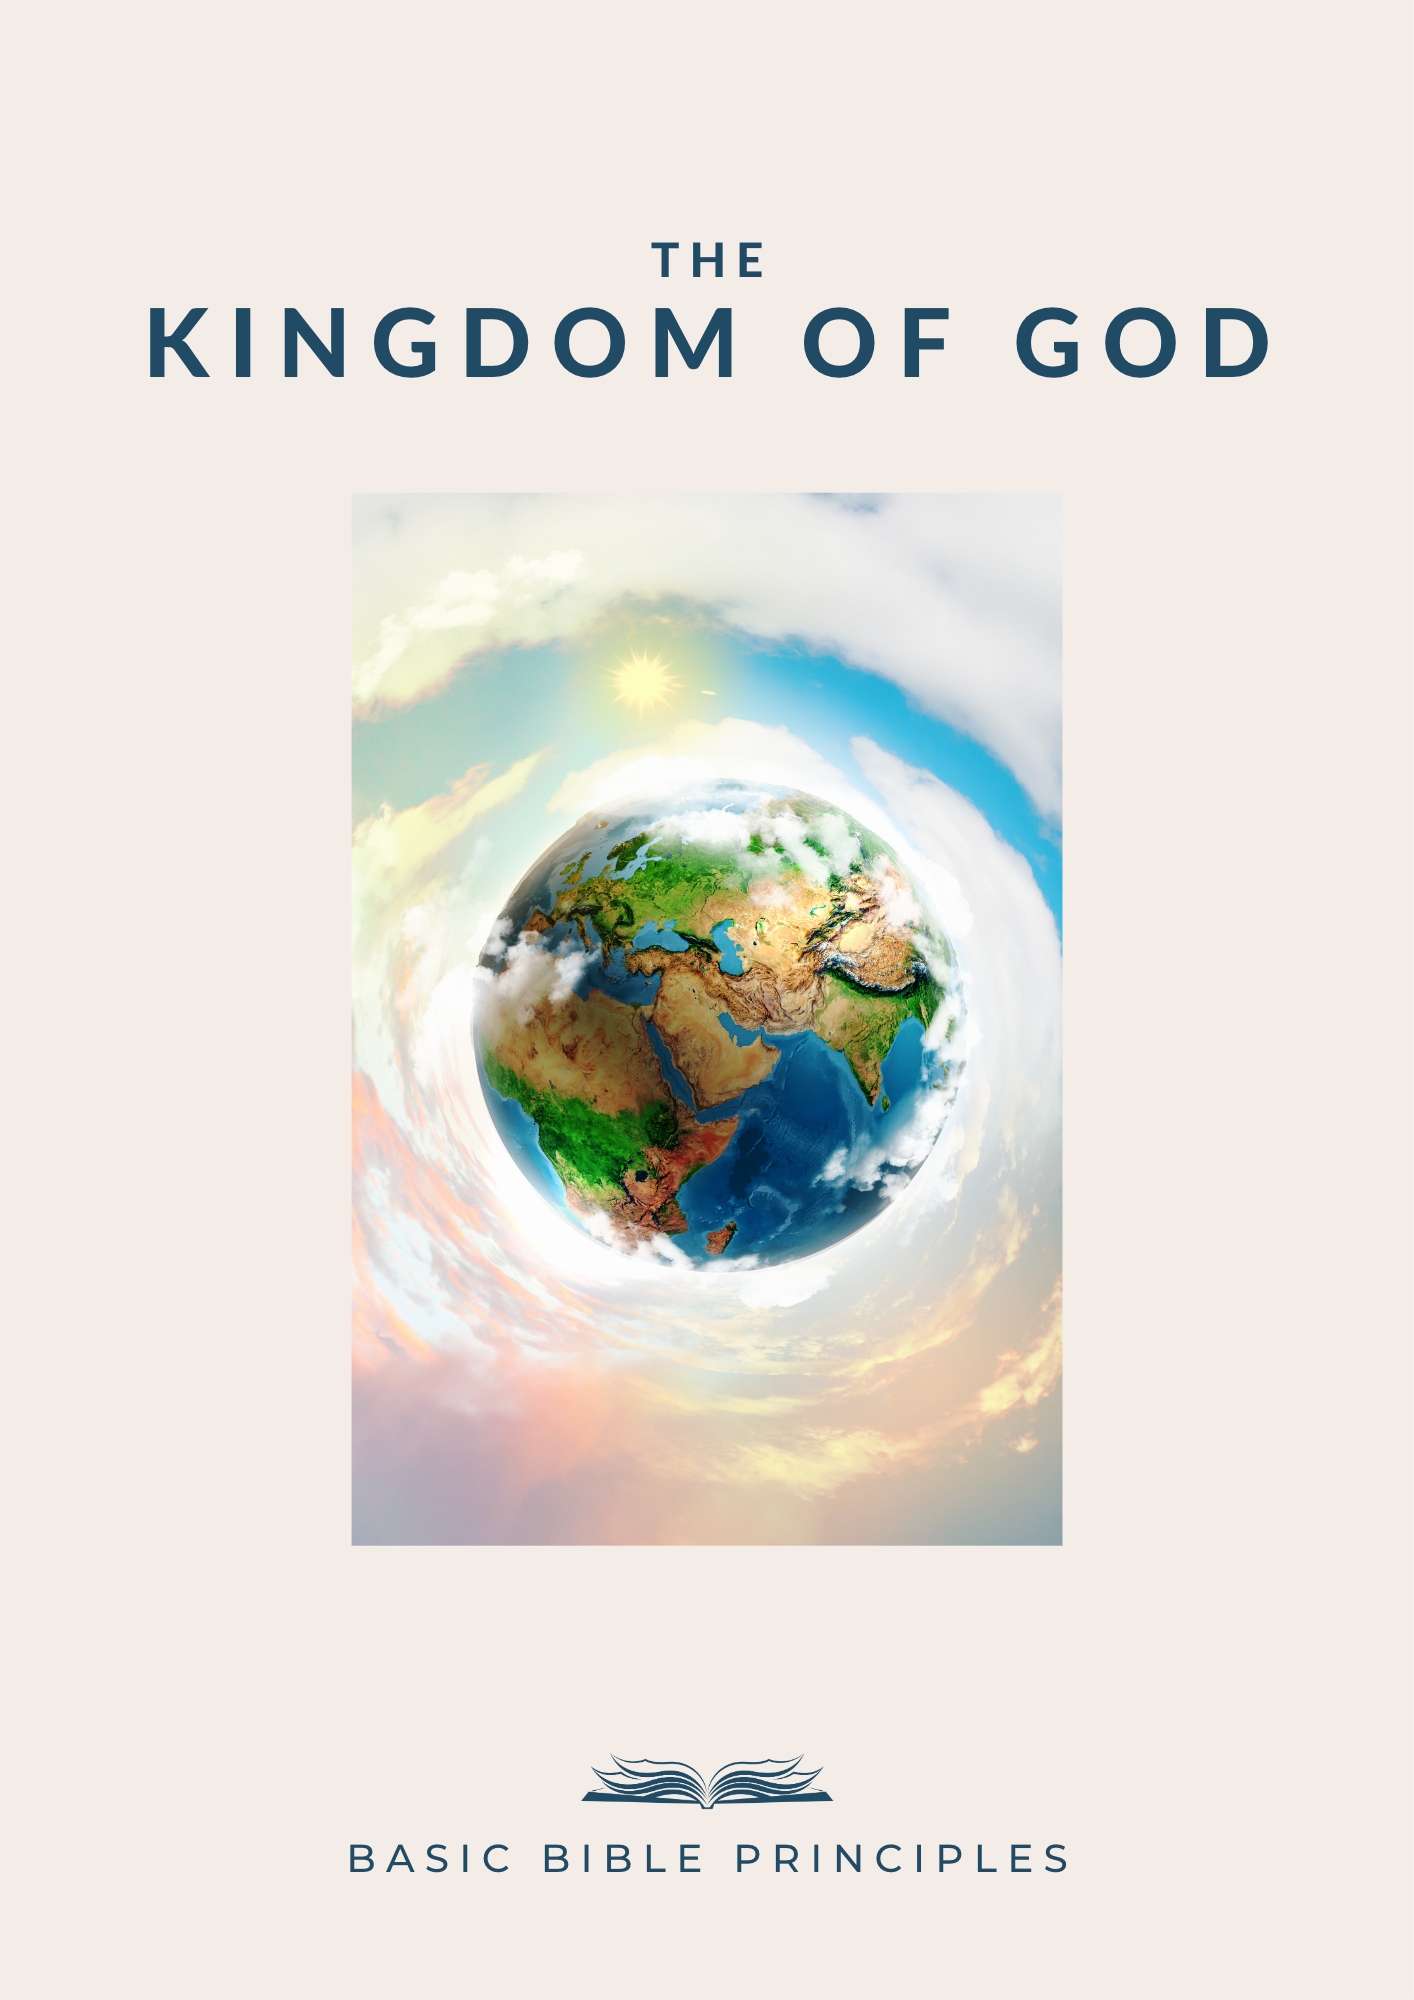 Basic Bible Principles: THE KINGDOM OF GOD